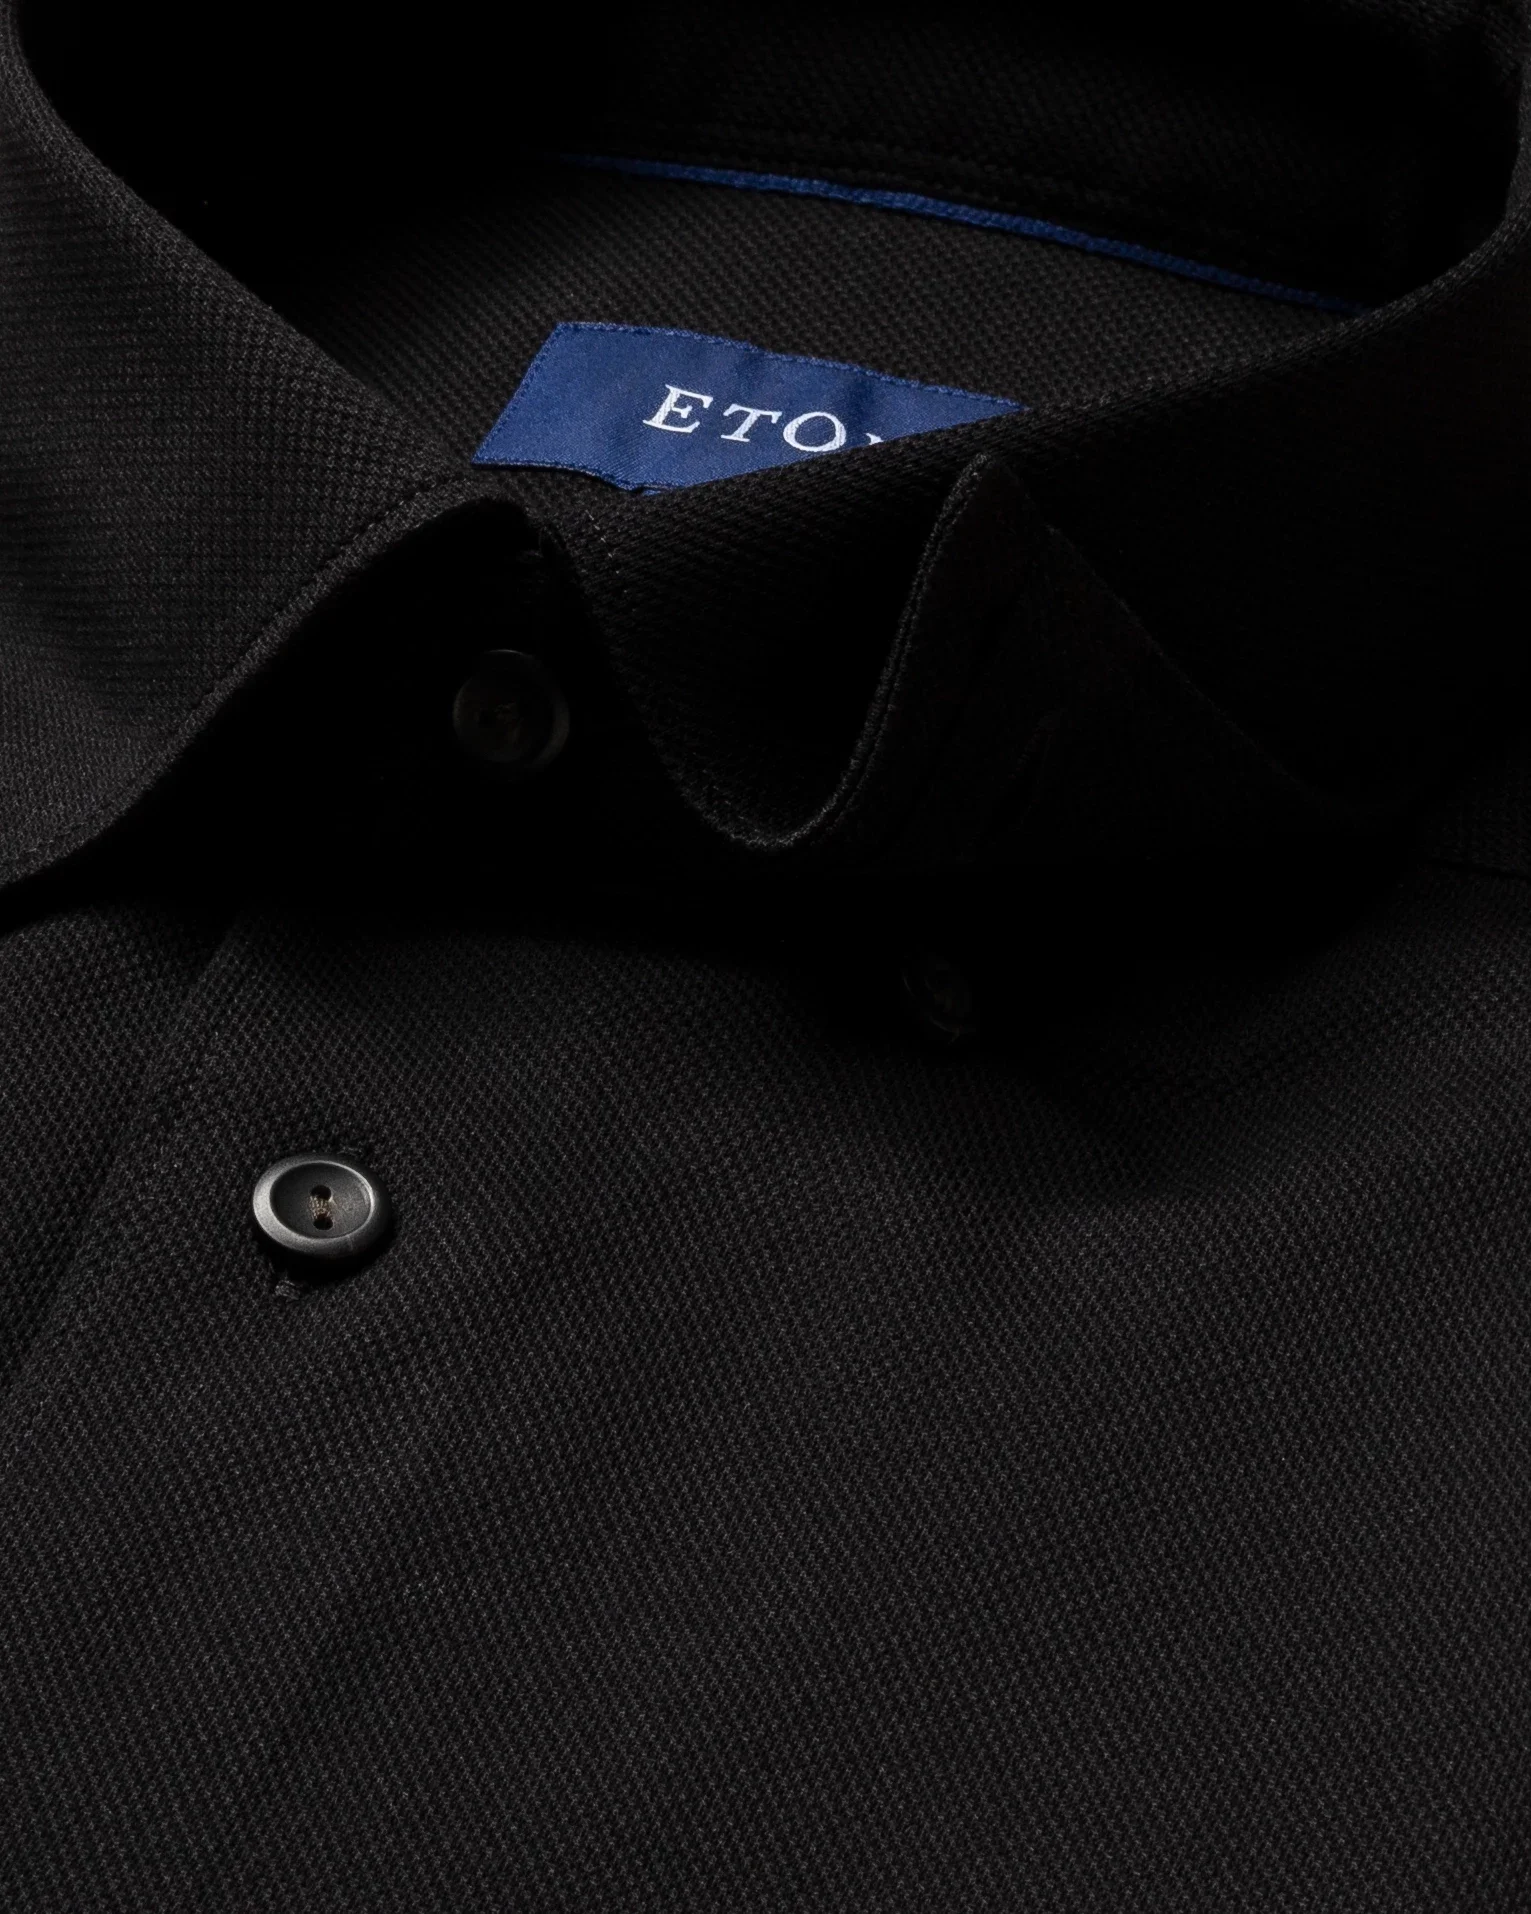 Eton - black pique shirt long sleeved